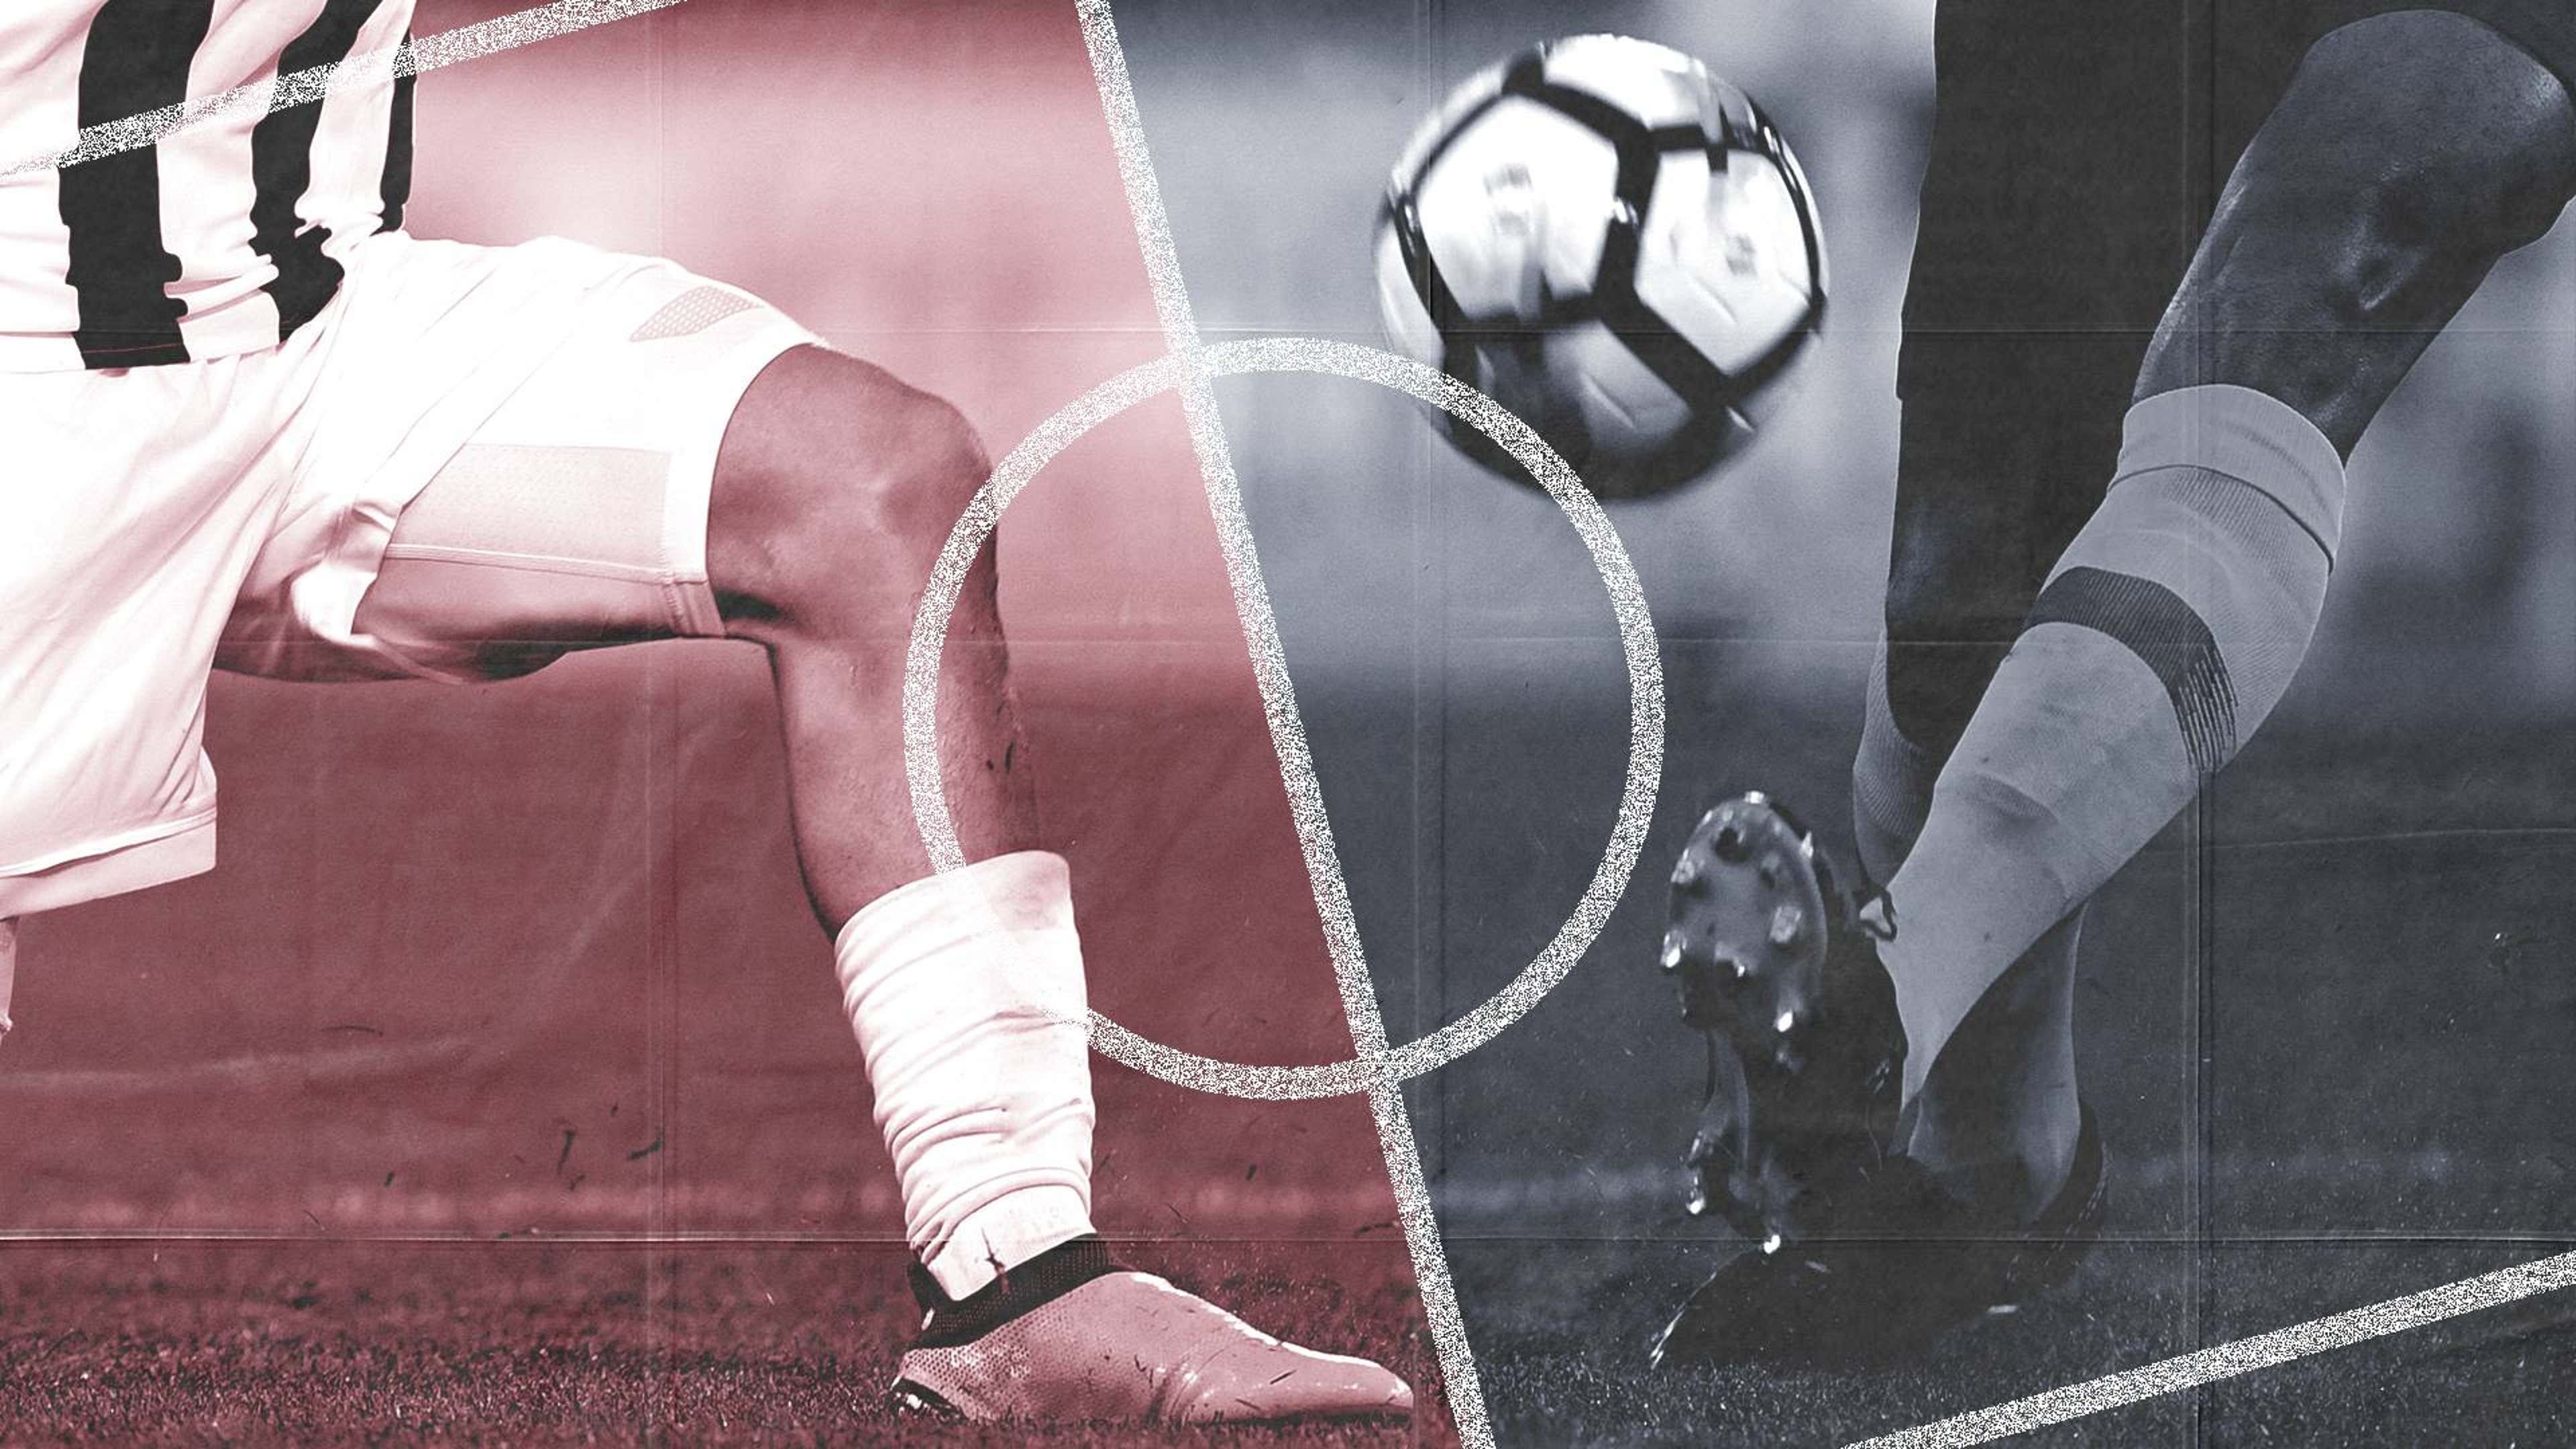 Palpites Ligue 1: Melhores dicas de apostas dos nossos